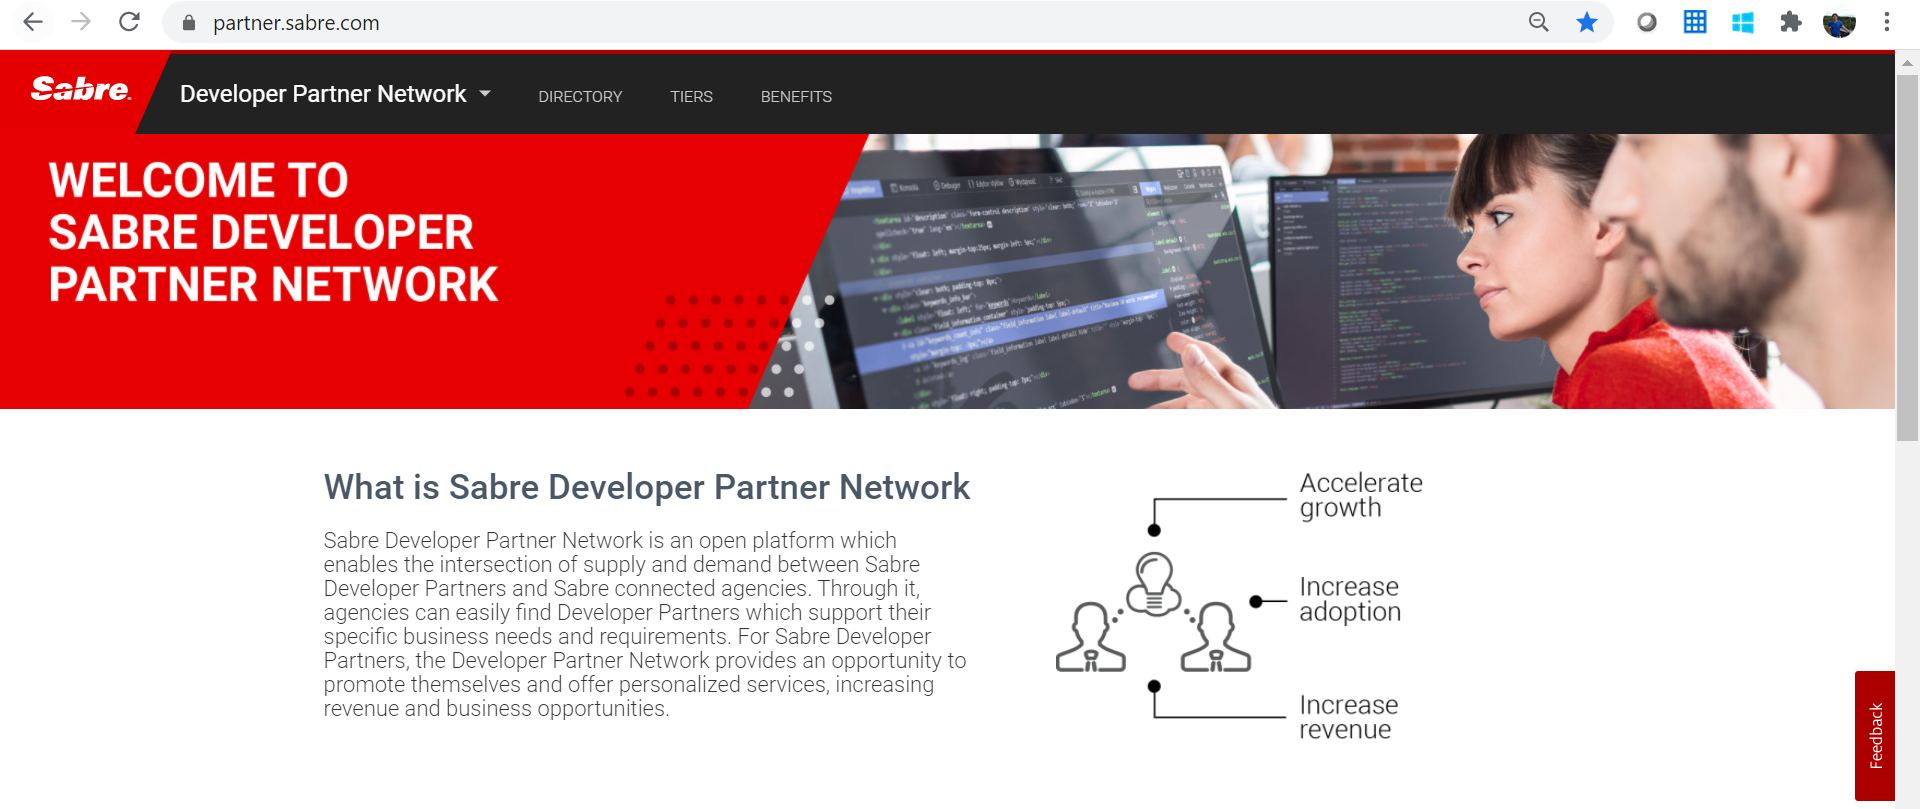 Figure 1: Sabre Developer Partner Network homepage